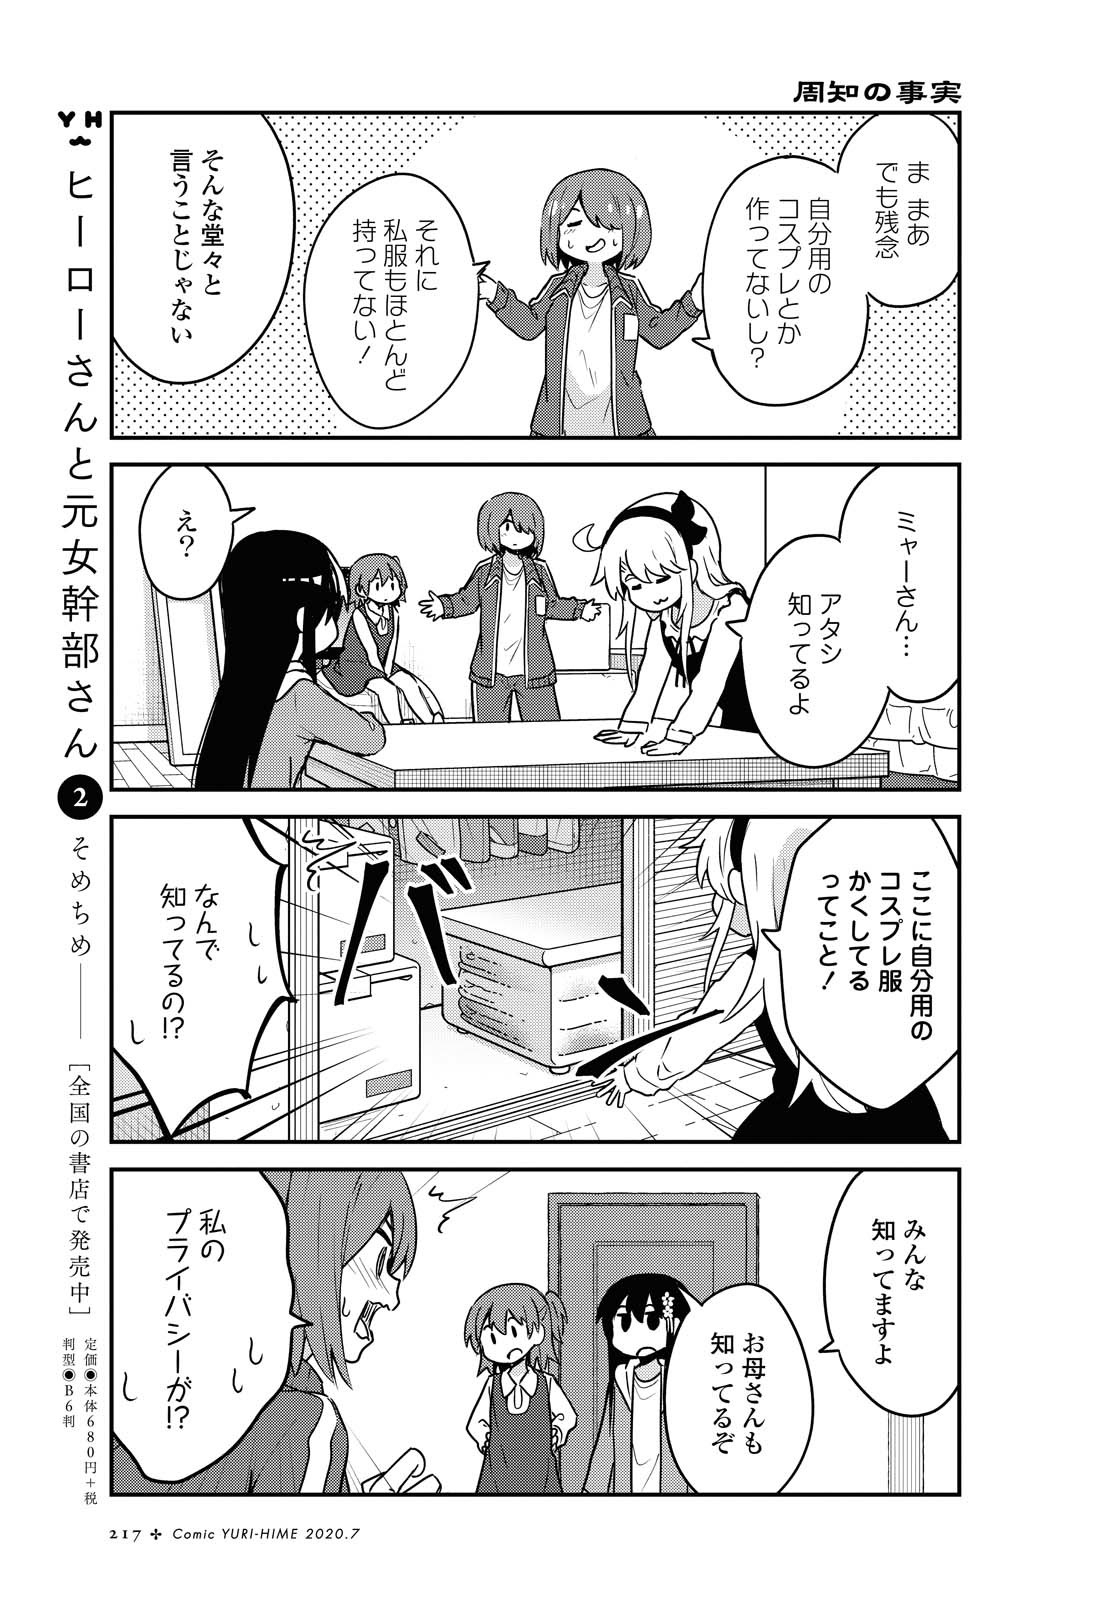 Watashi ni Tenshi ga Maiorita! - Chapter 67 - Page 5